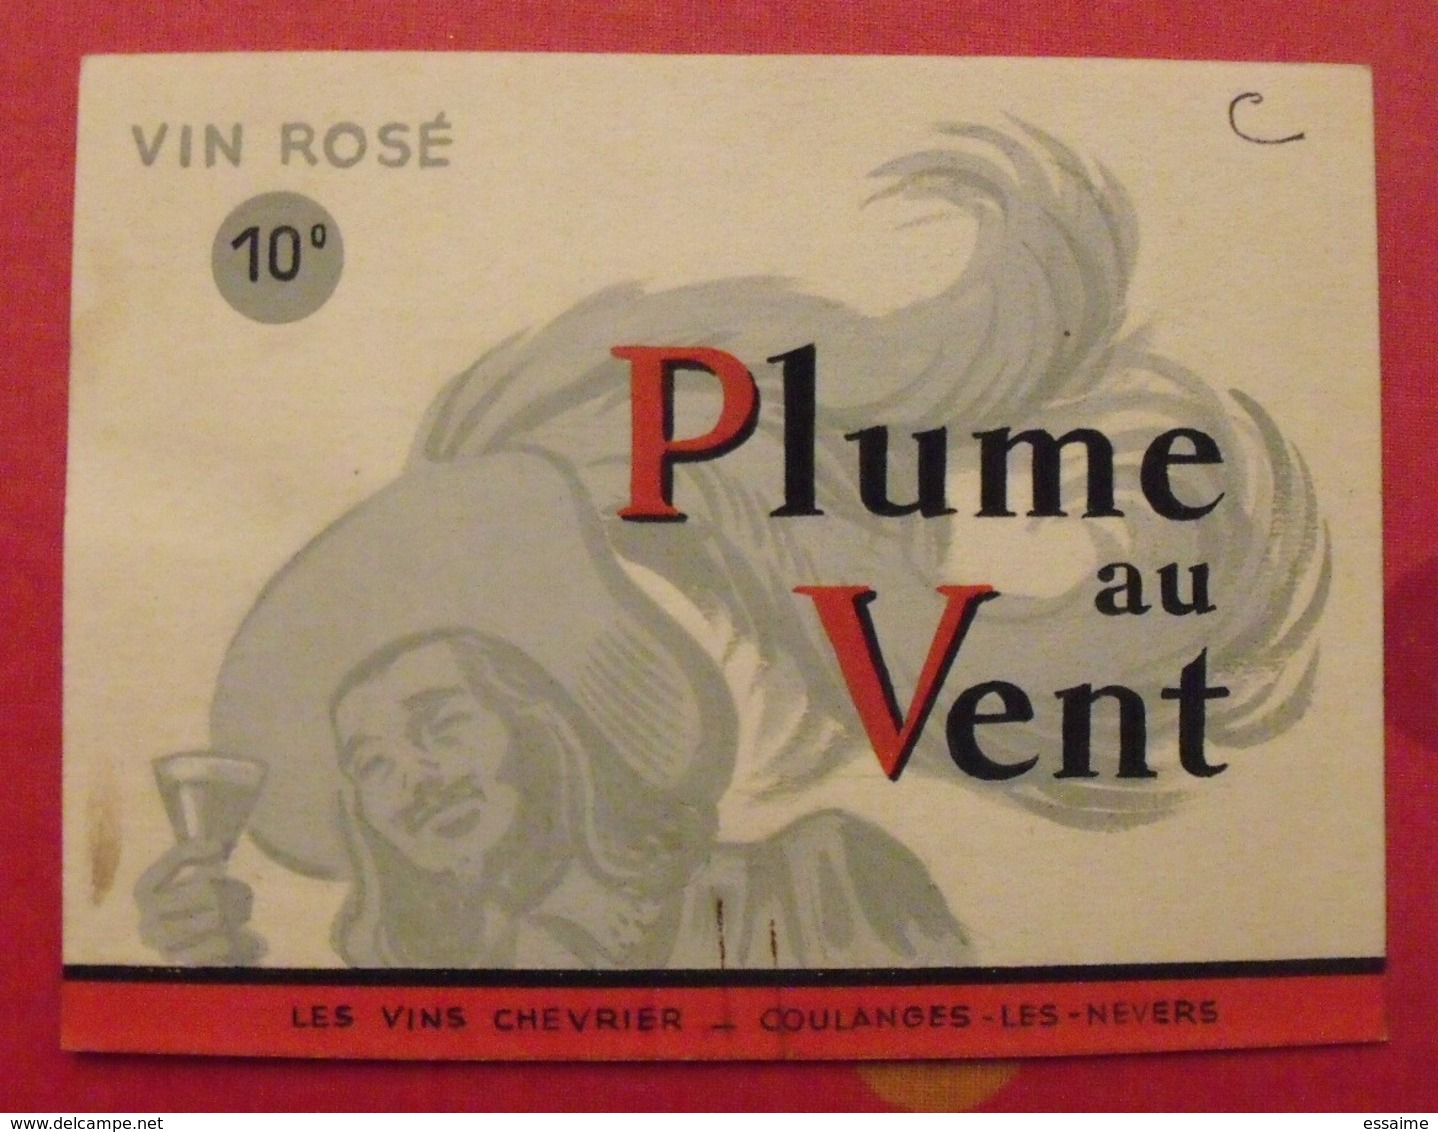 Maquette Gouache D'une étiquette De Vin. Plume Au Vent. Vins Chevrier Coulanges-les-Nevers. Dejoie Vers 1950-60 - Alcools